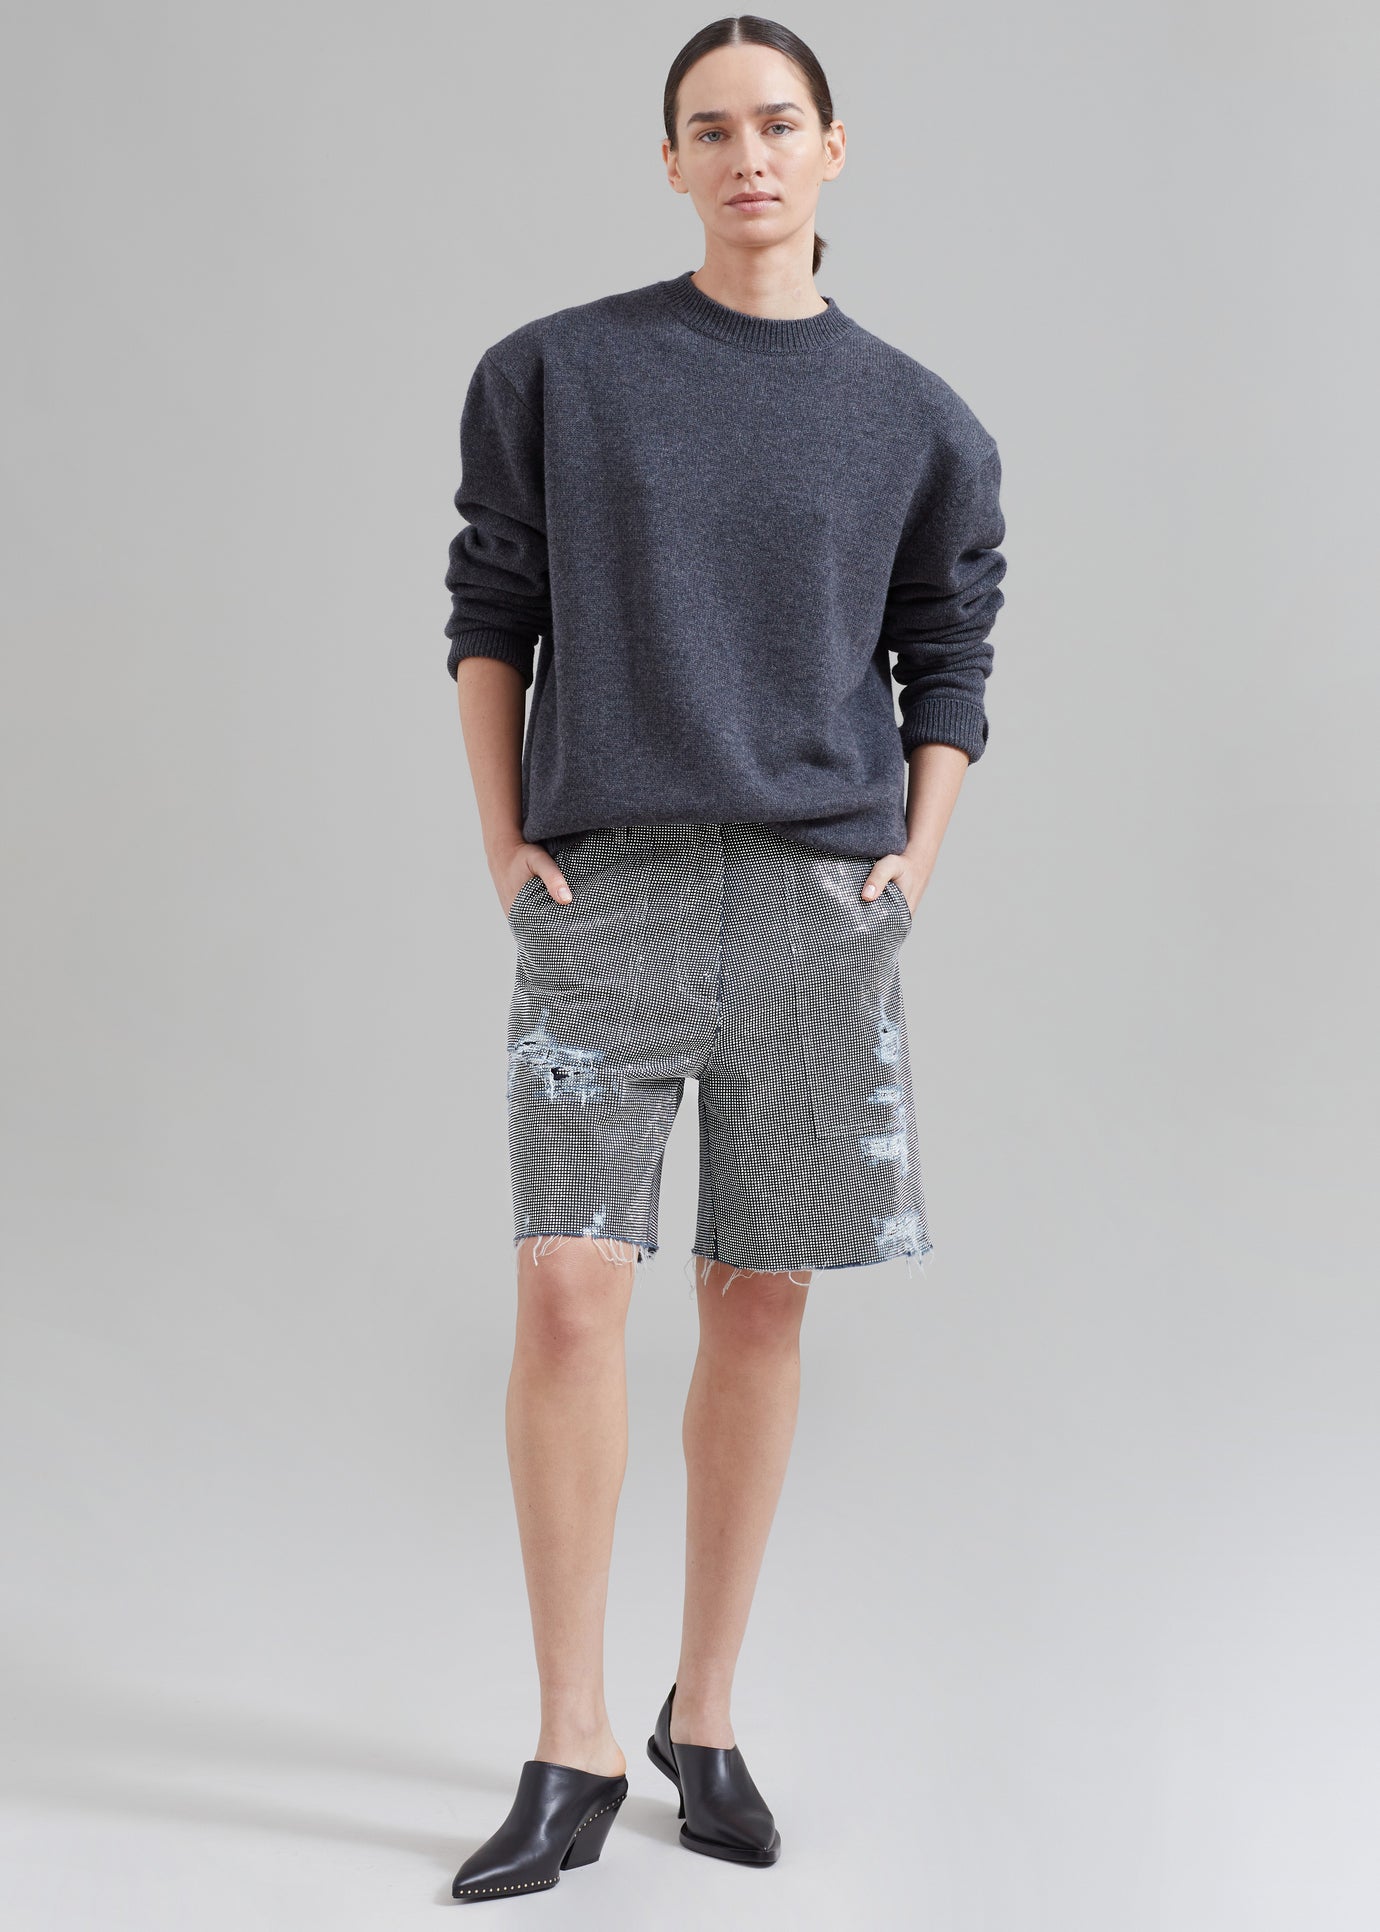 JW Anderson Studded Workwear Shorts - Indigo/Silver